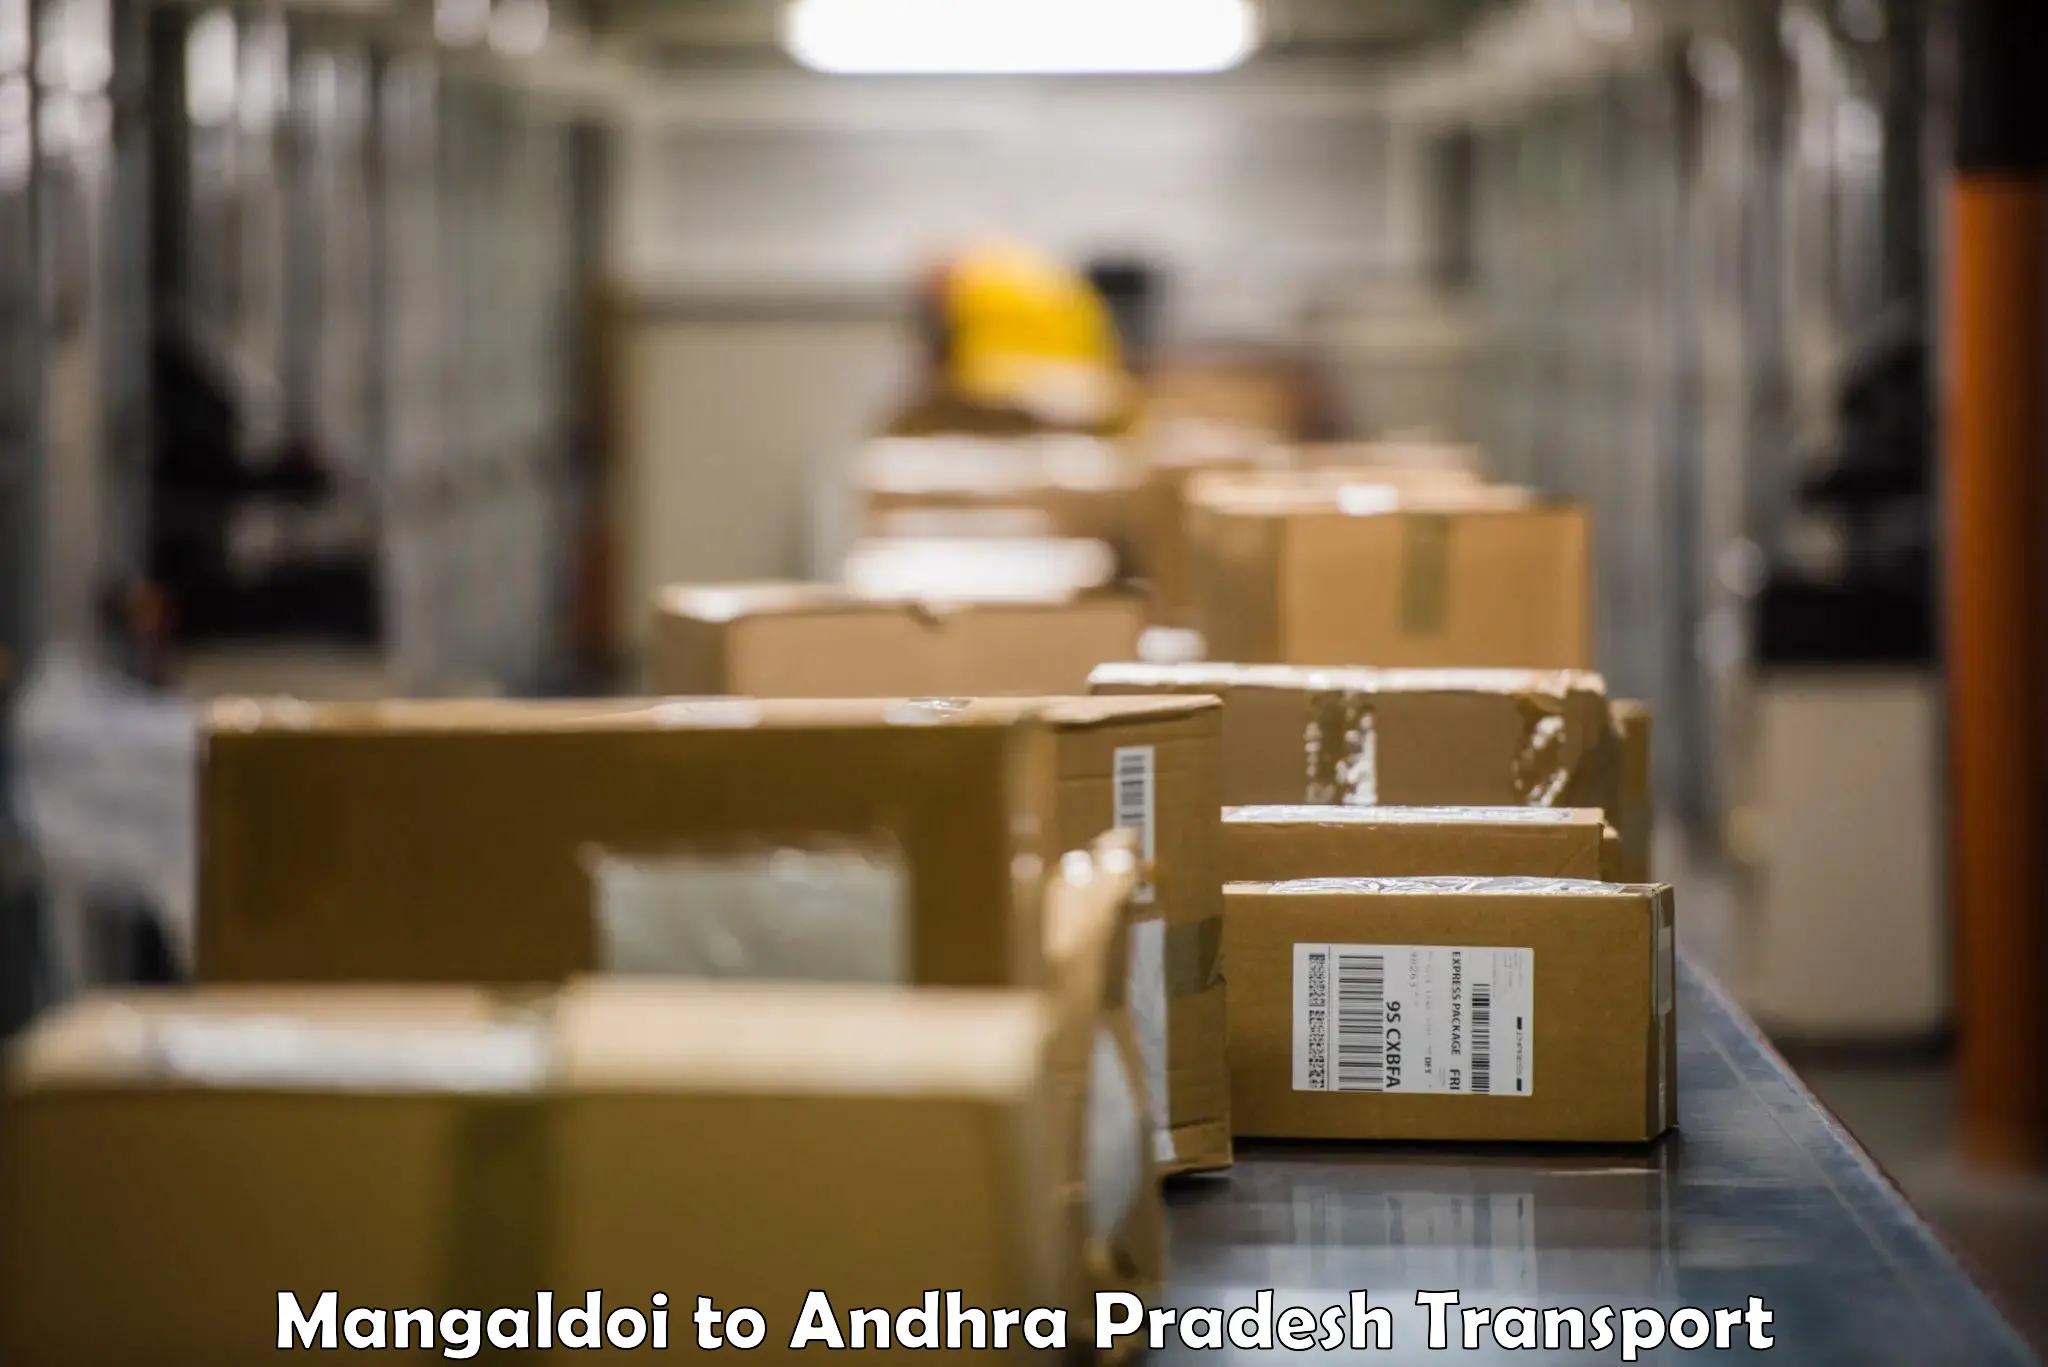 Delivery service Mangaldoi to Narsapur